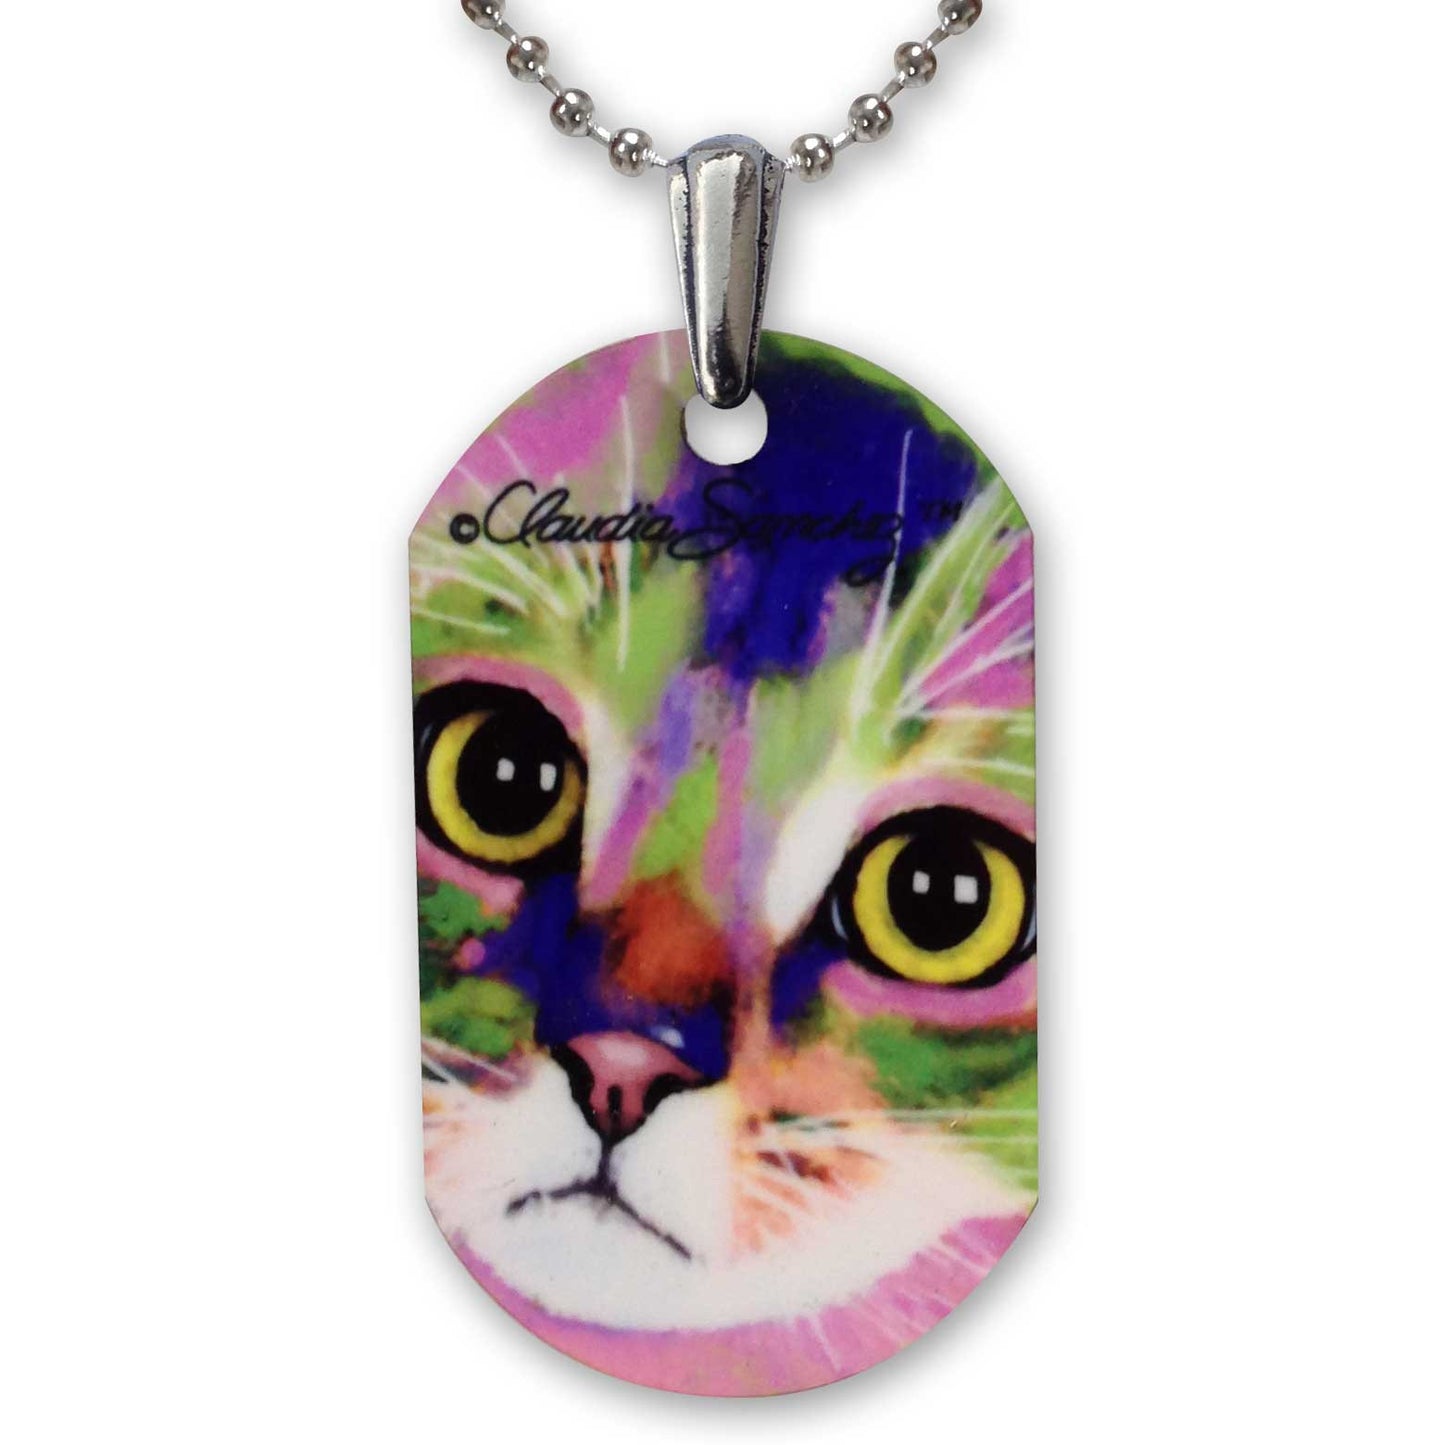 Kauhi Eyes Cat Art Aluminum Pendant Necklace by Claudia Sanchez - White